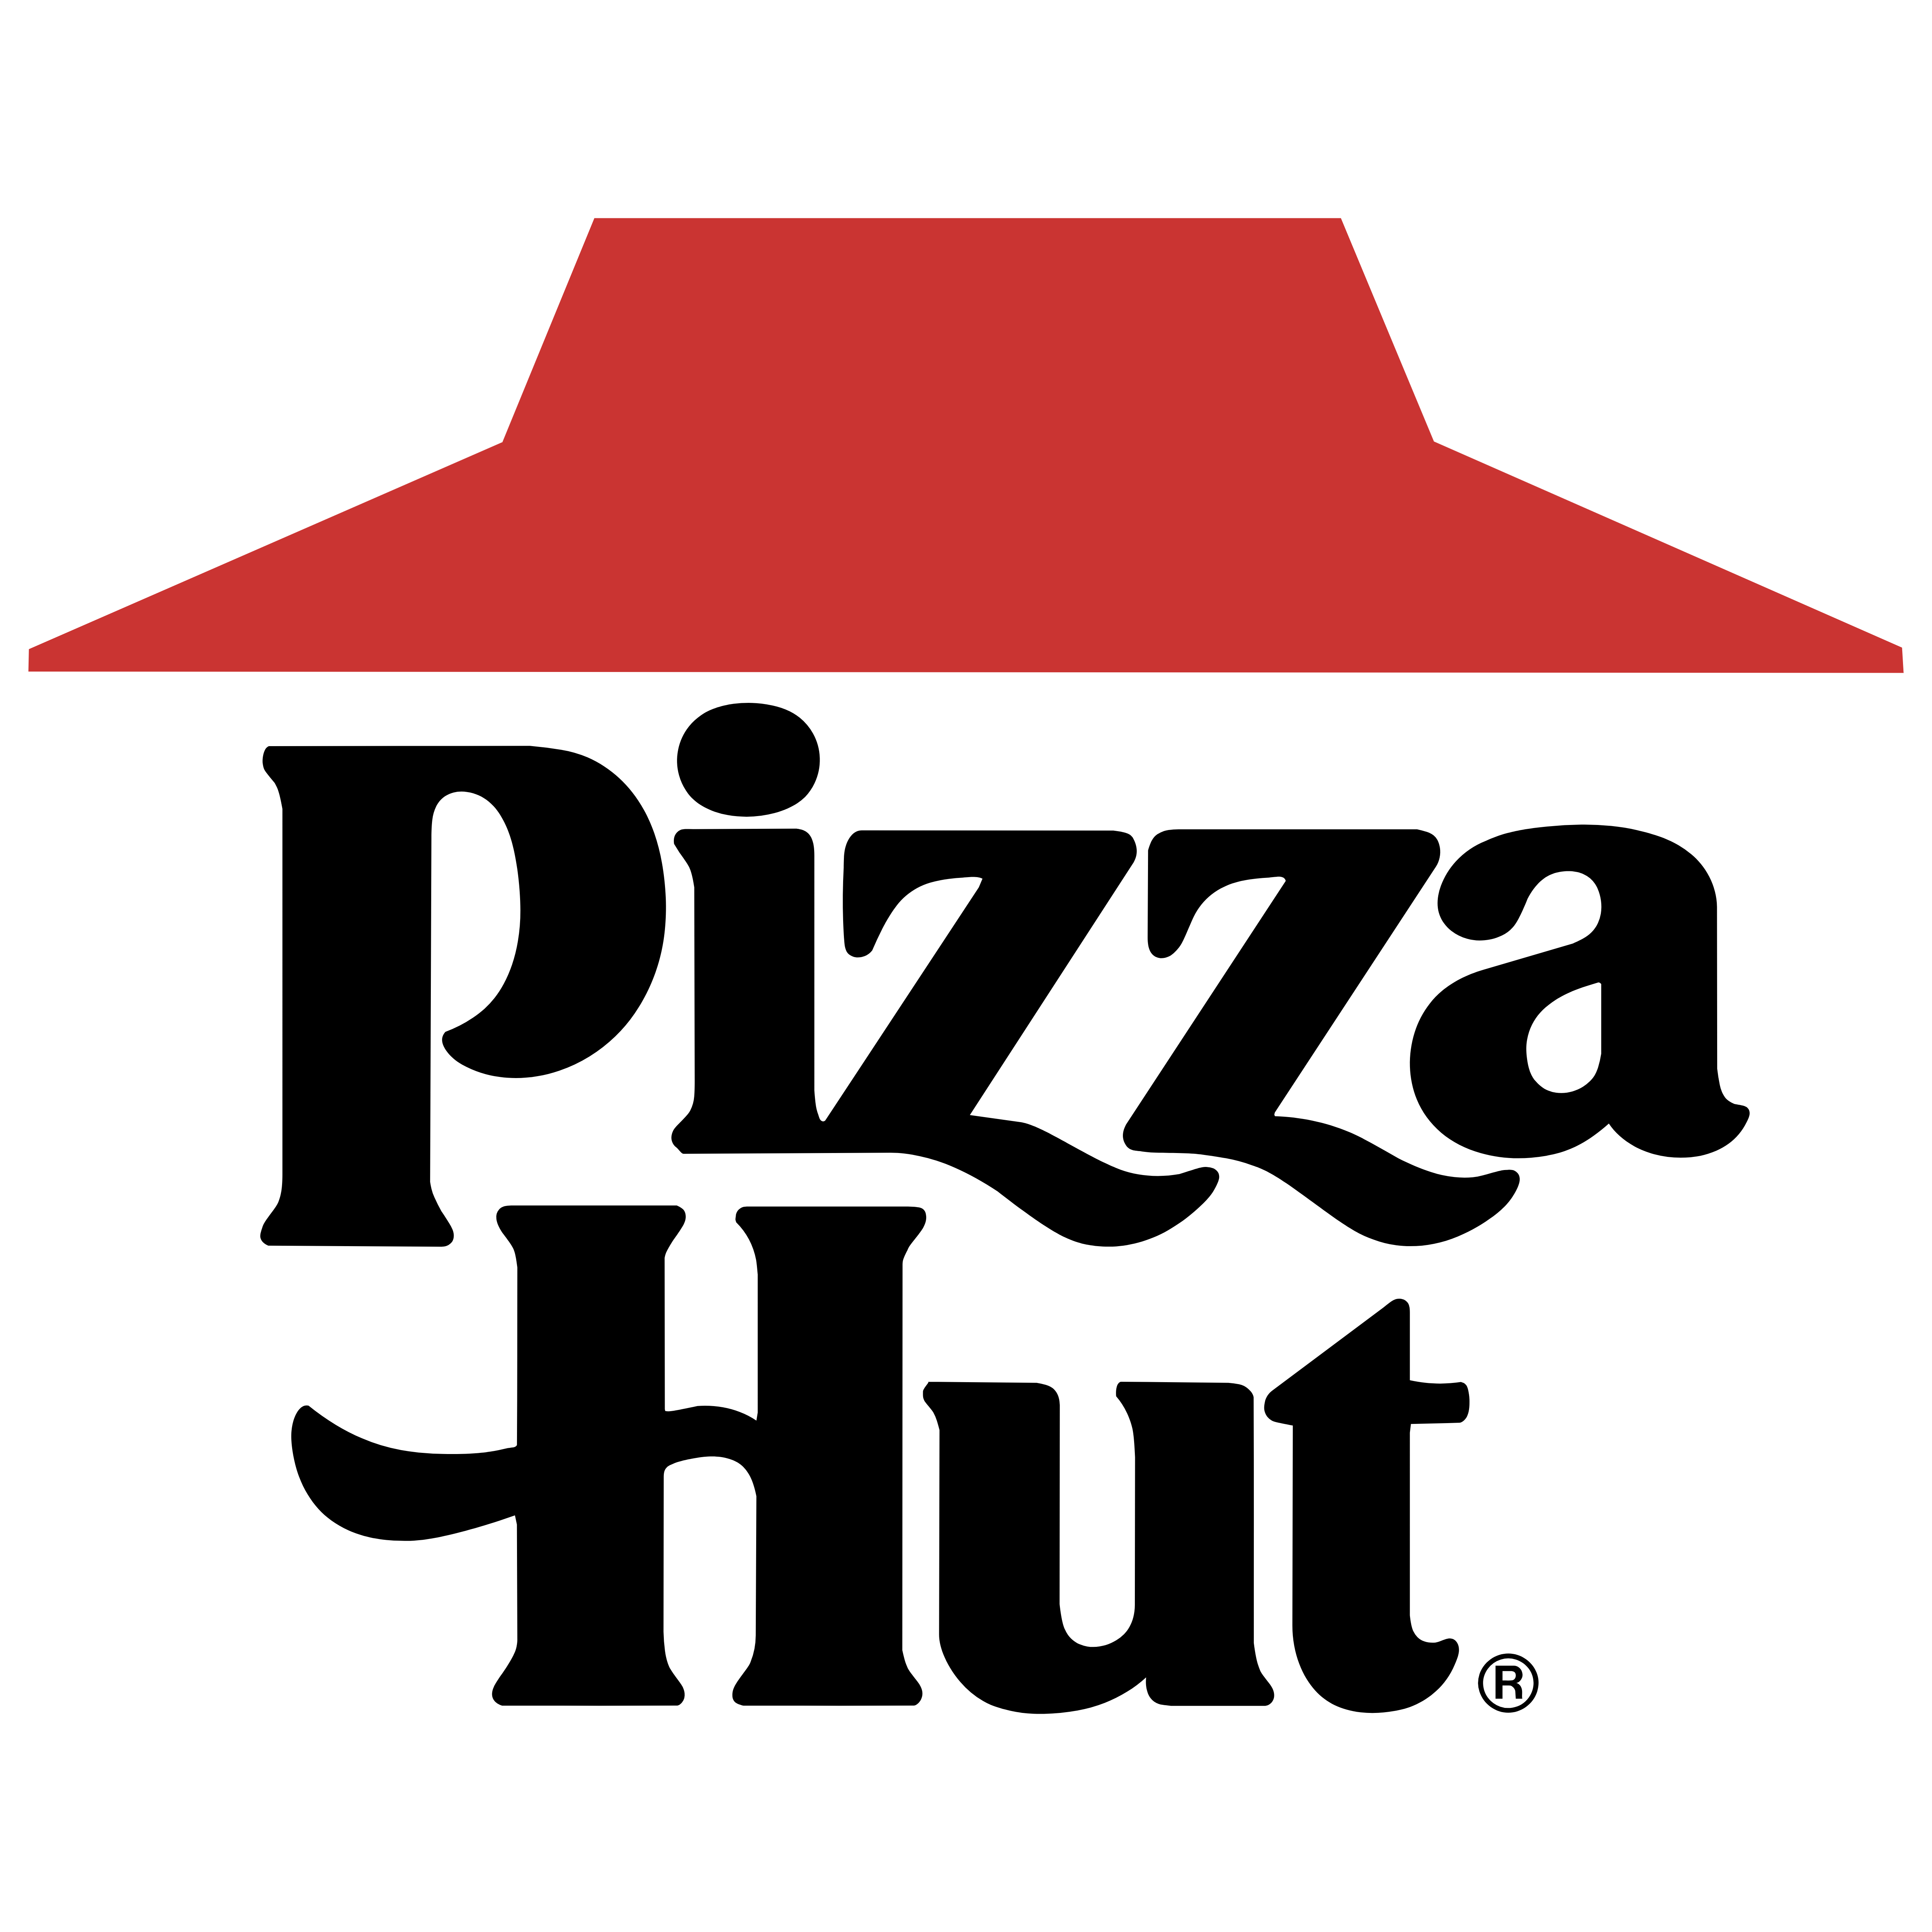 Địa chỉ pizza hut logo toàn quốc - Đặt ngay để nhận ưu đãi hấp dẫn